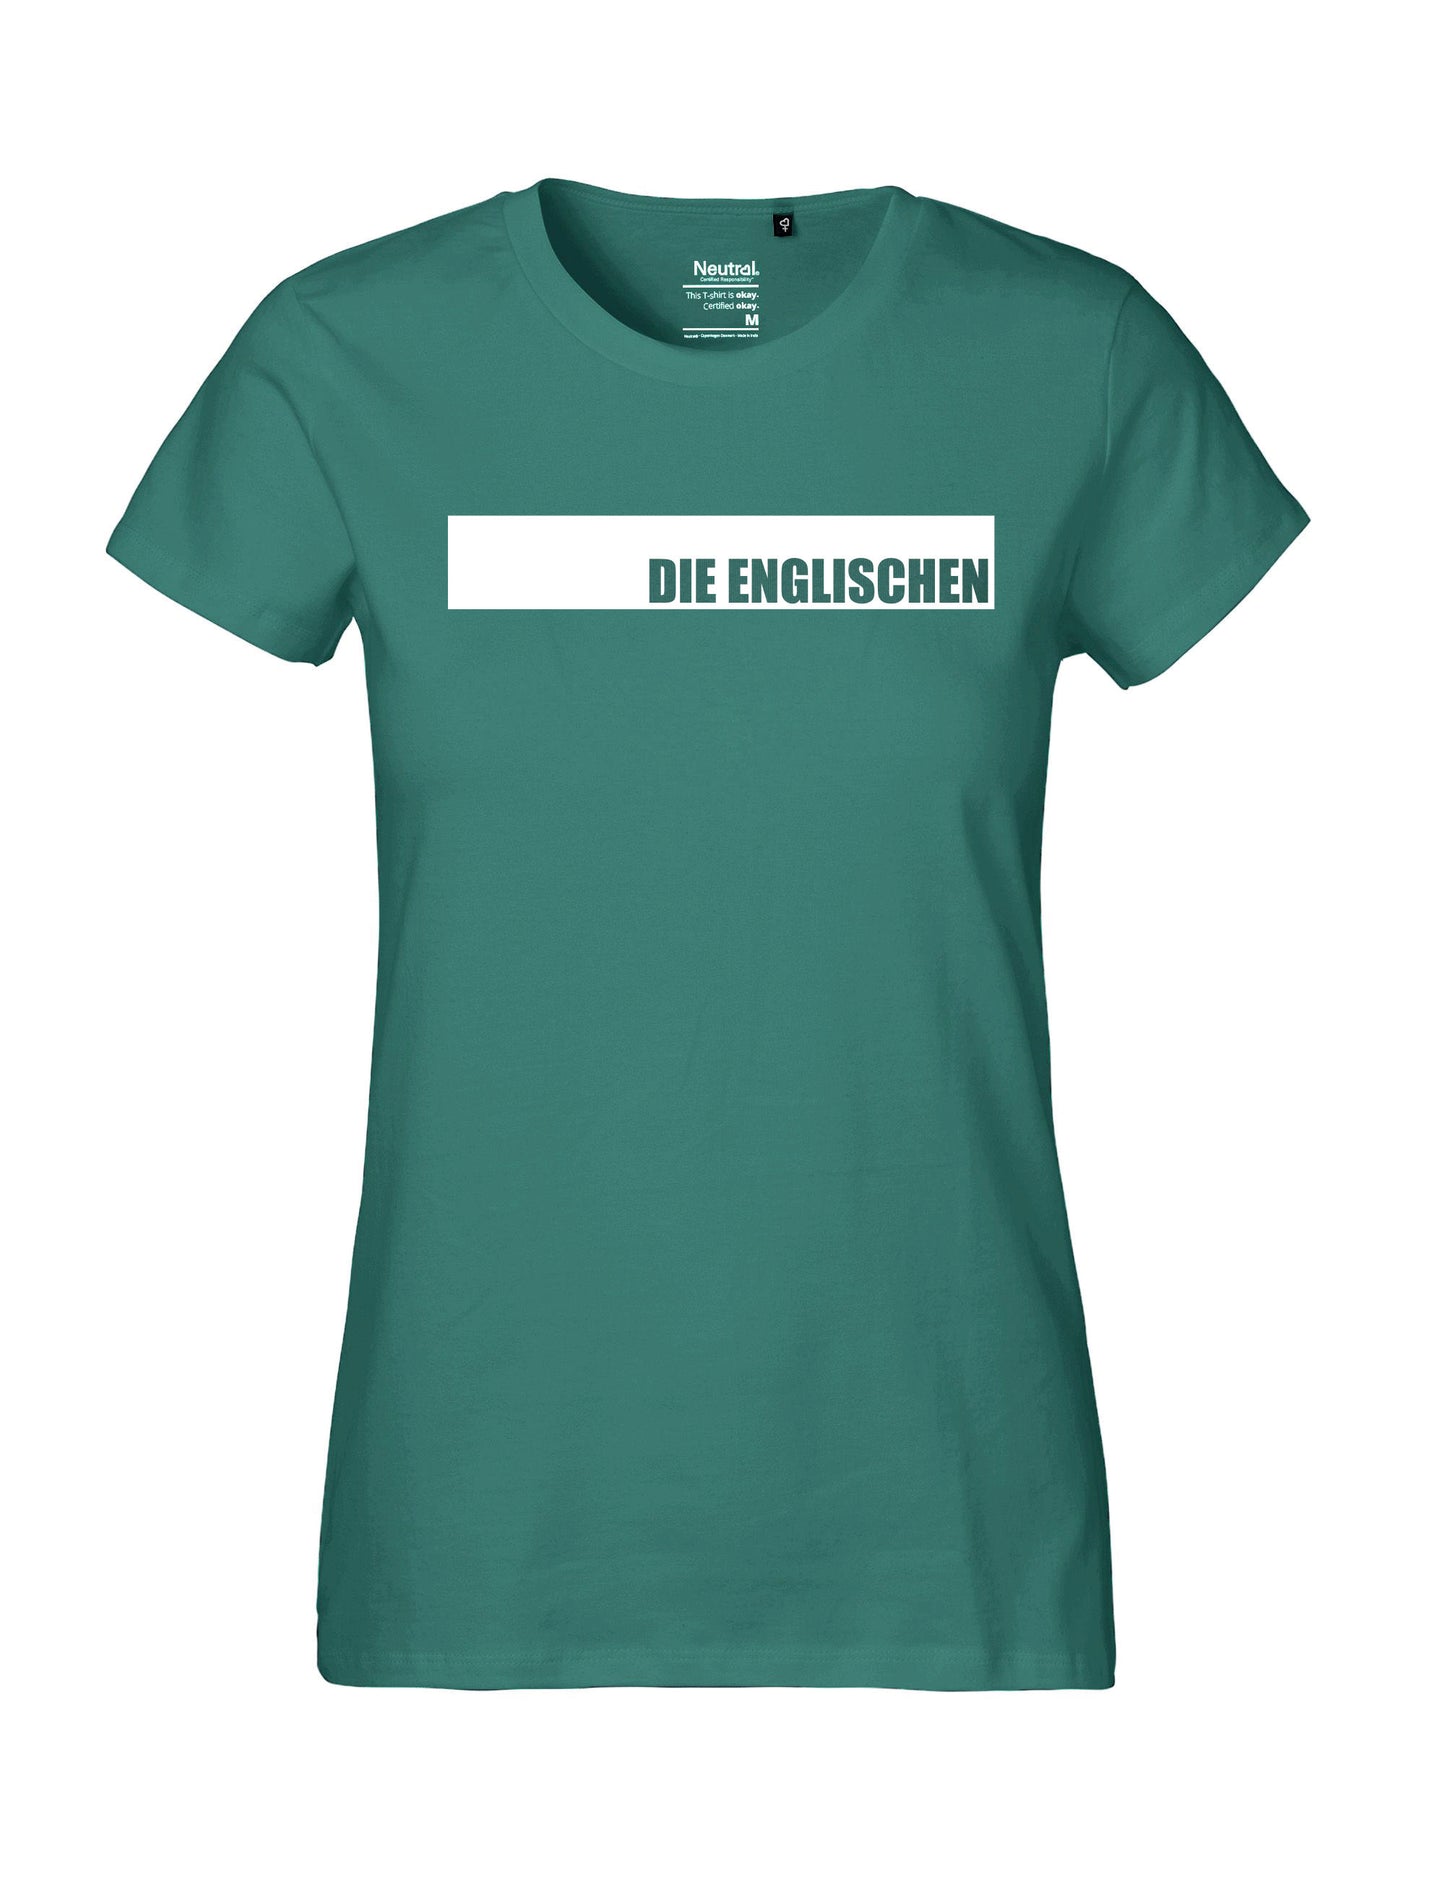 Shirt mit Brustprint "DIE ENGLISCHEN" - Damen